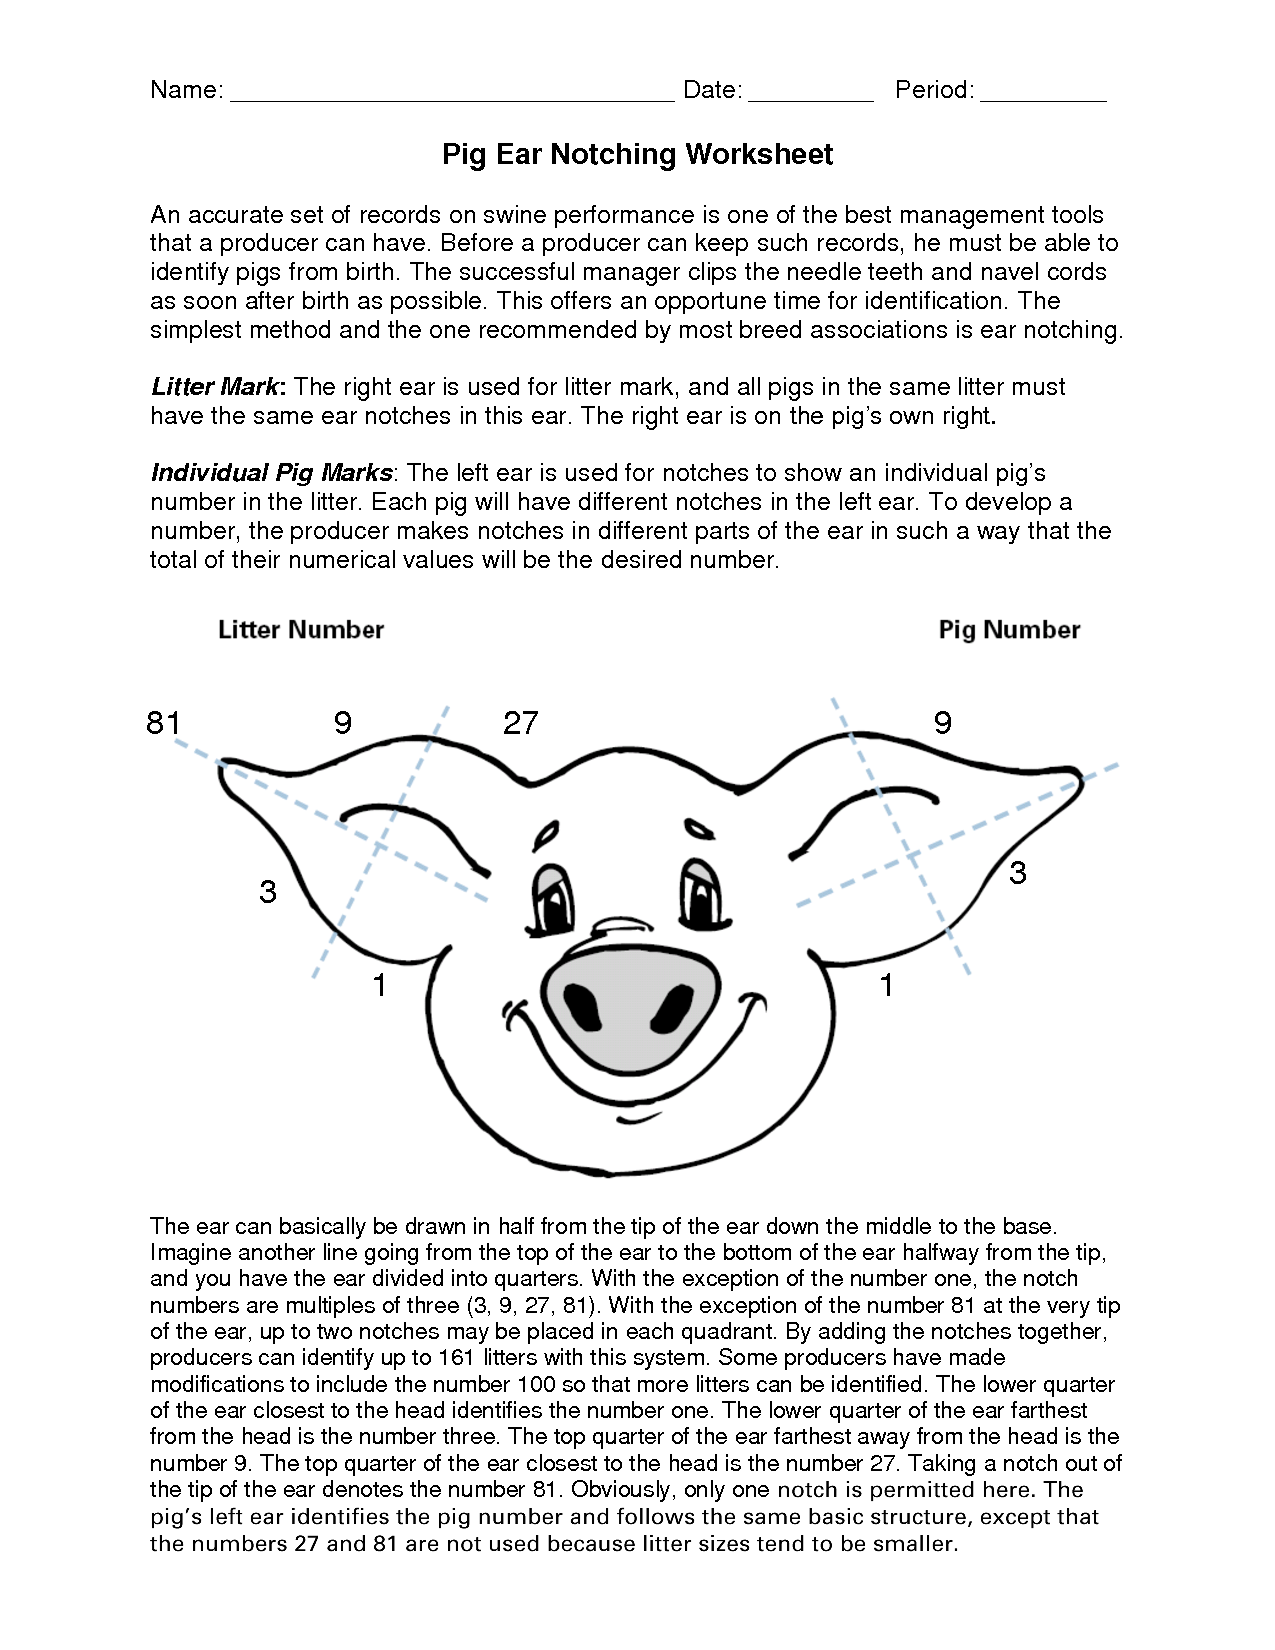 Swine Ear Notching Worksheet Answers